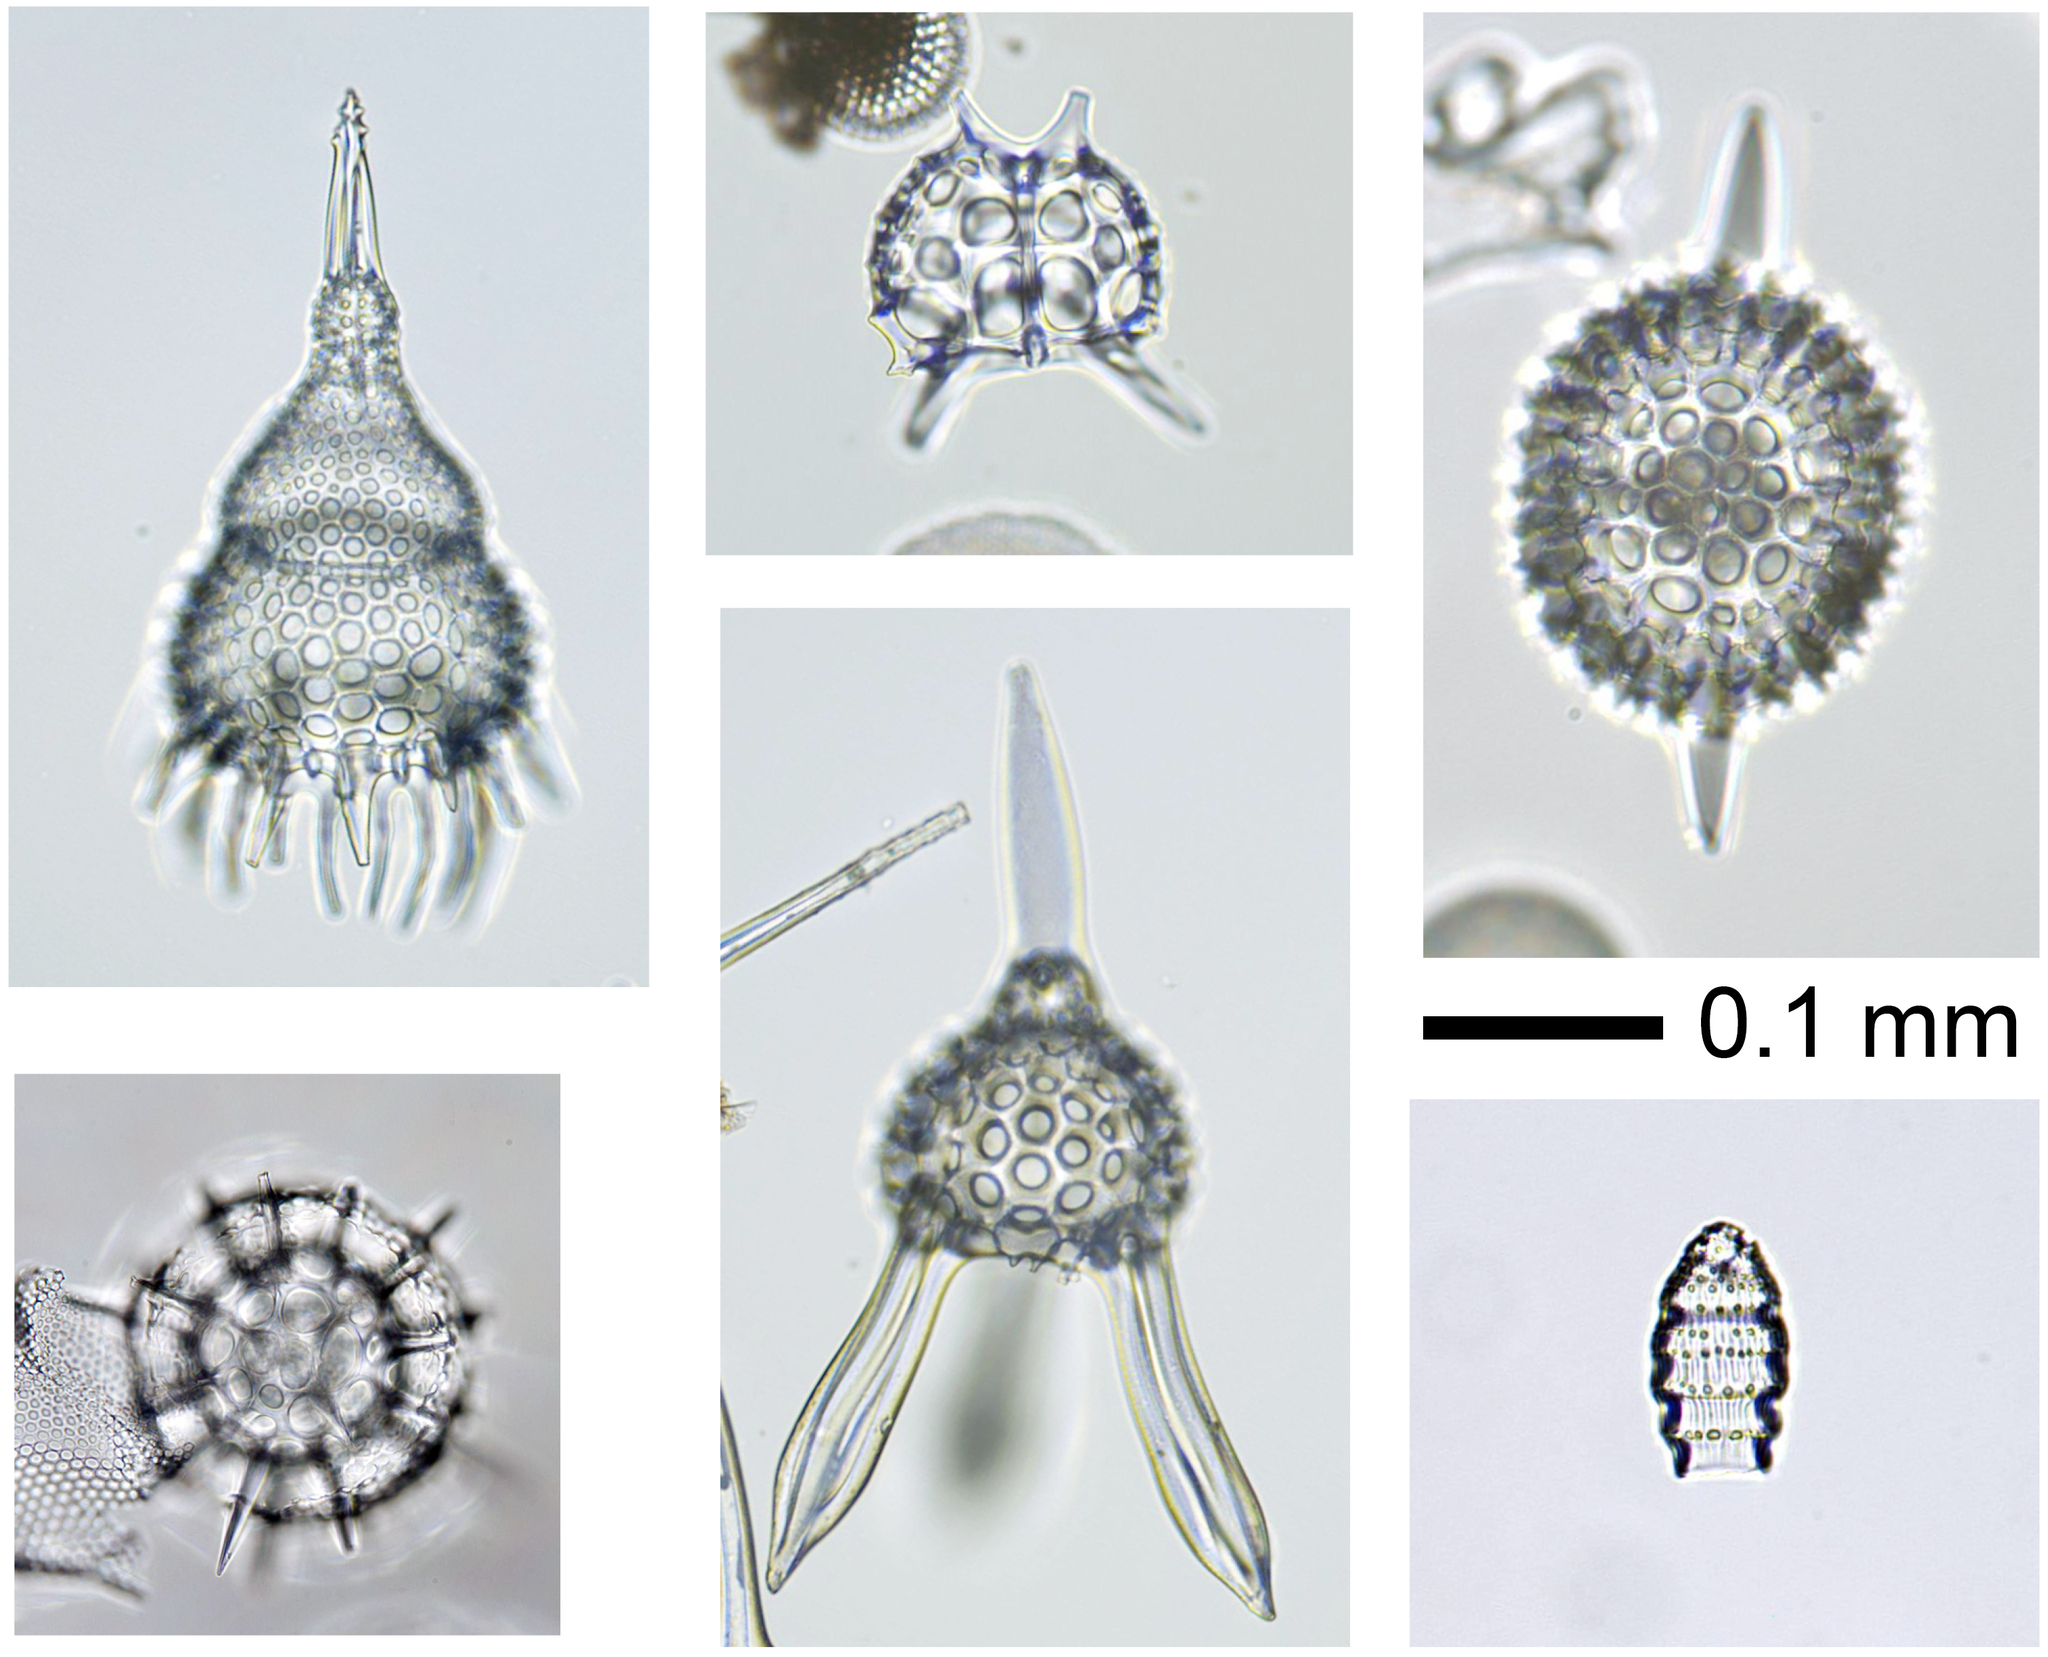 【写真】放散虫の顕微鏡写真